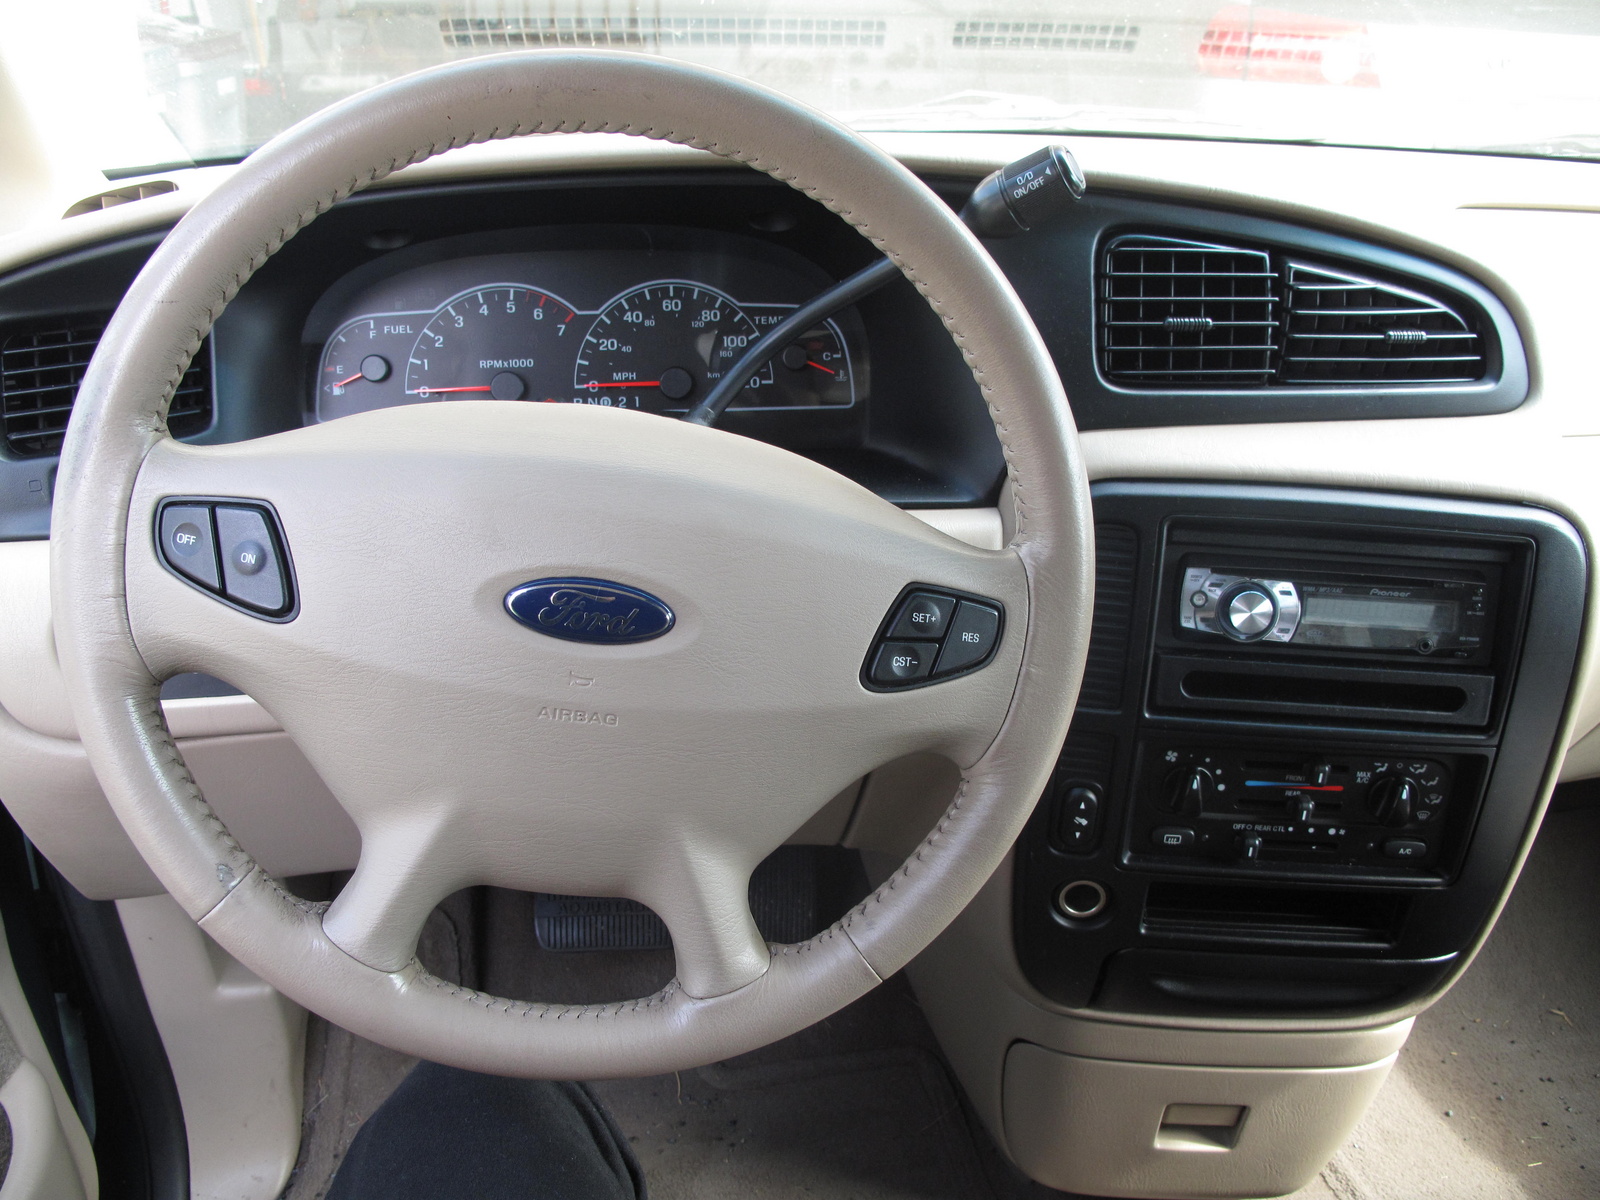 2002 Ford windstar trim